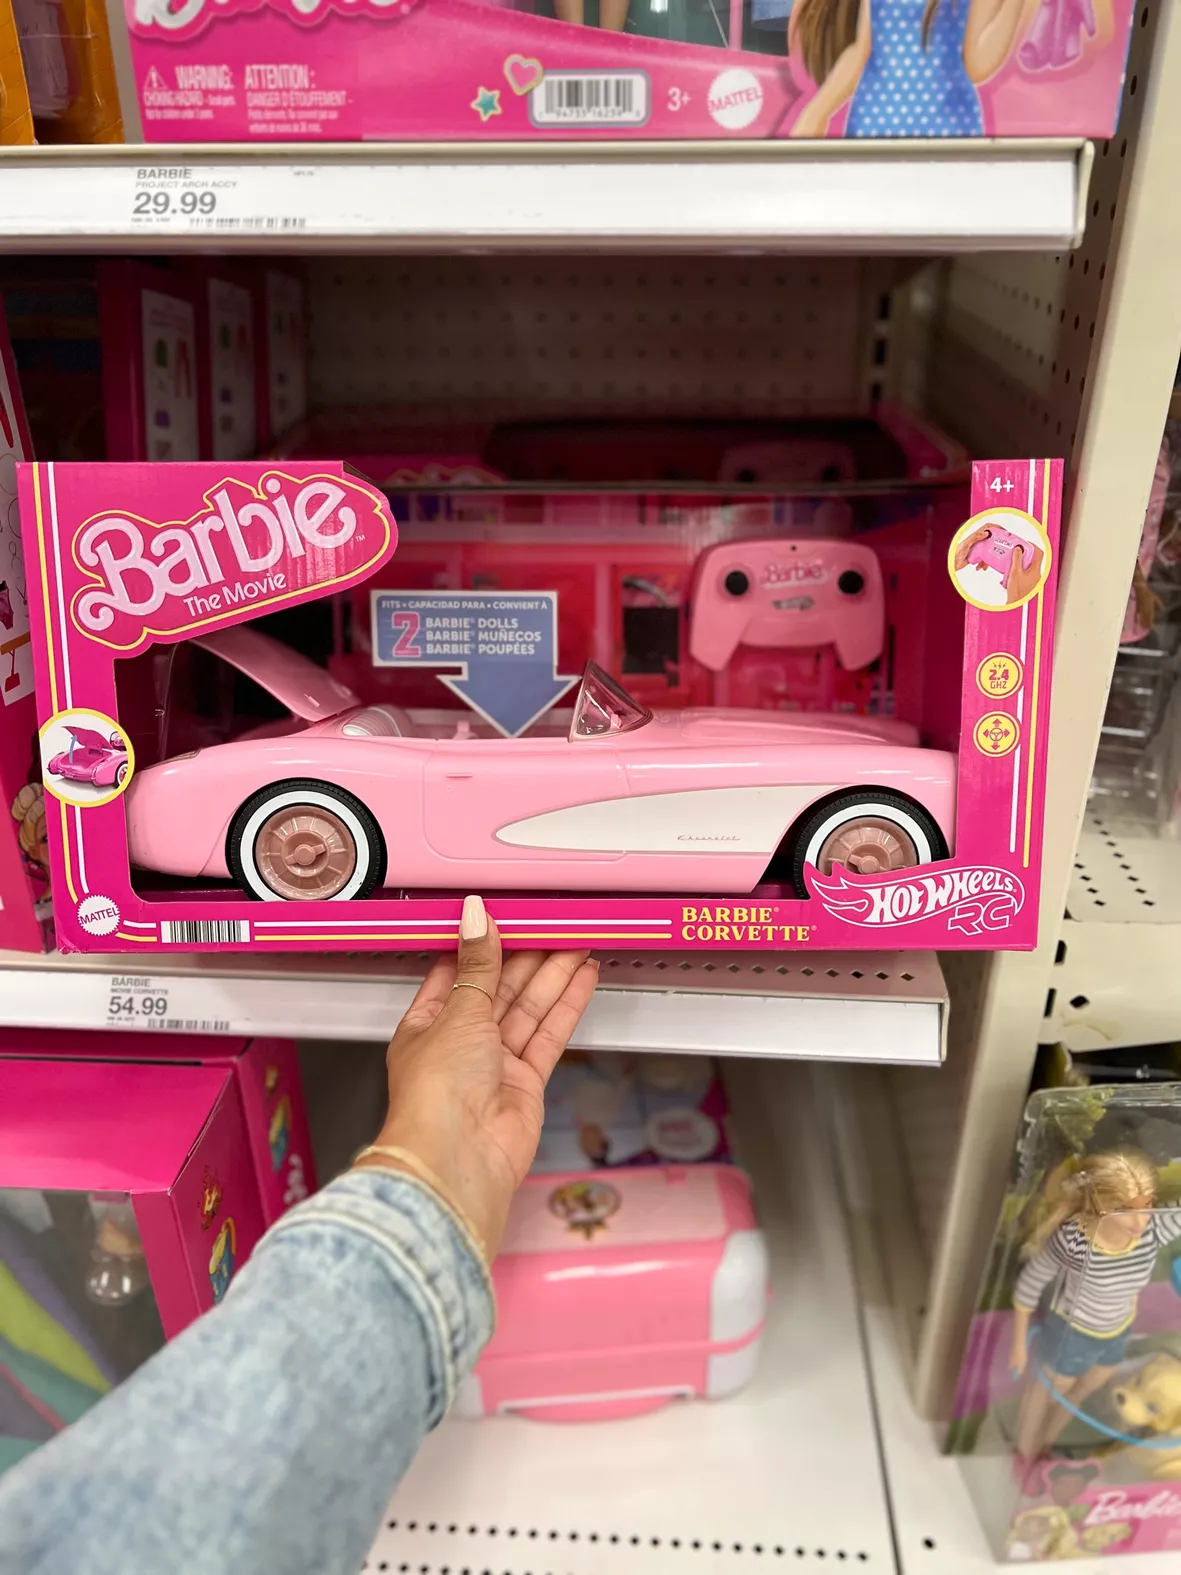 Barbie : Building Blocks & Sets : Target